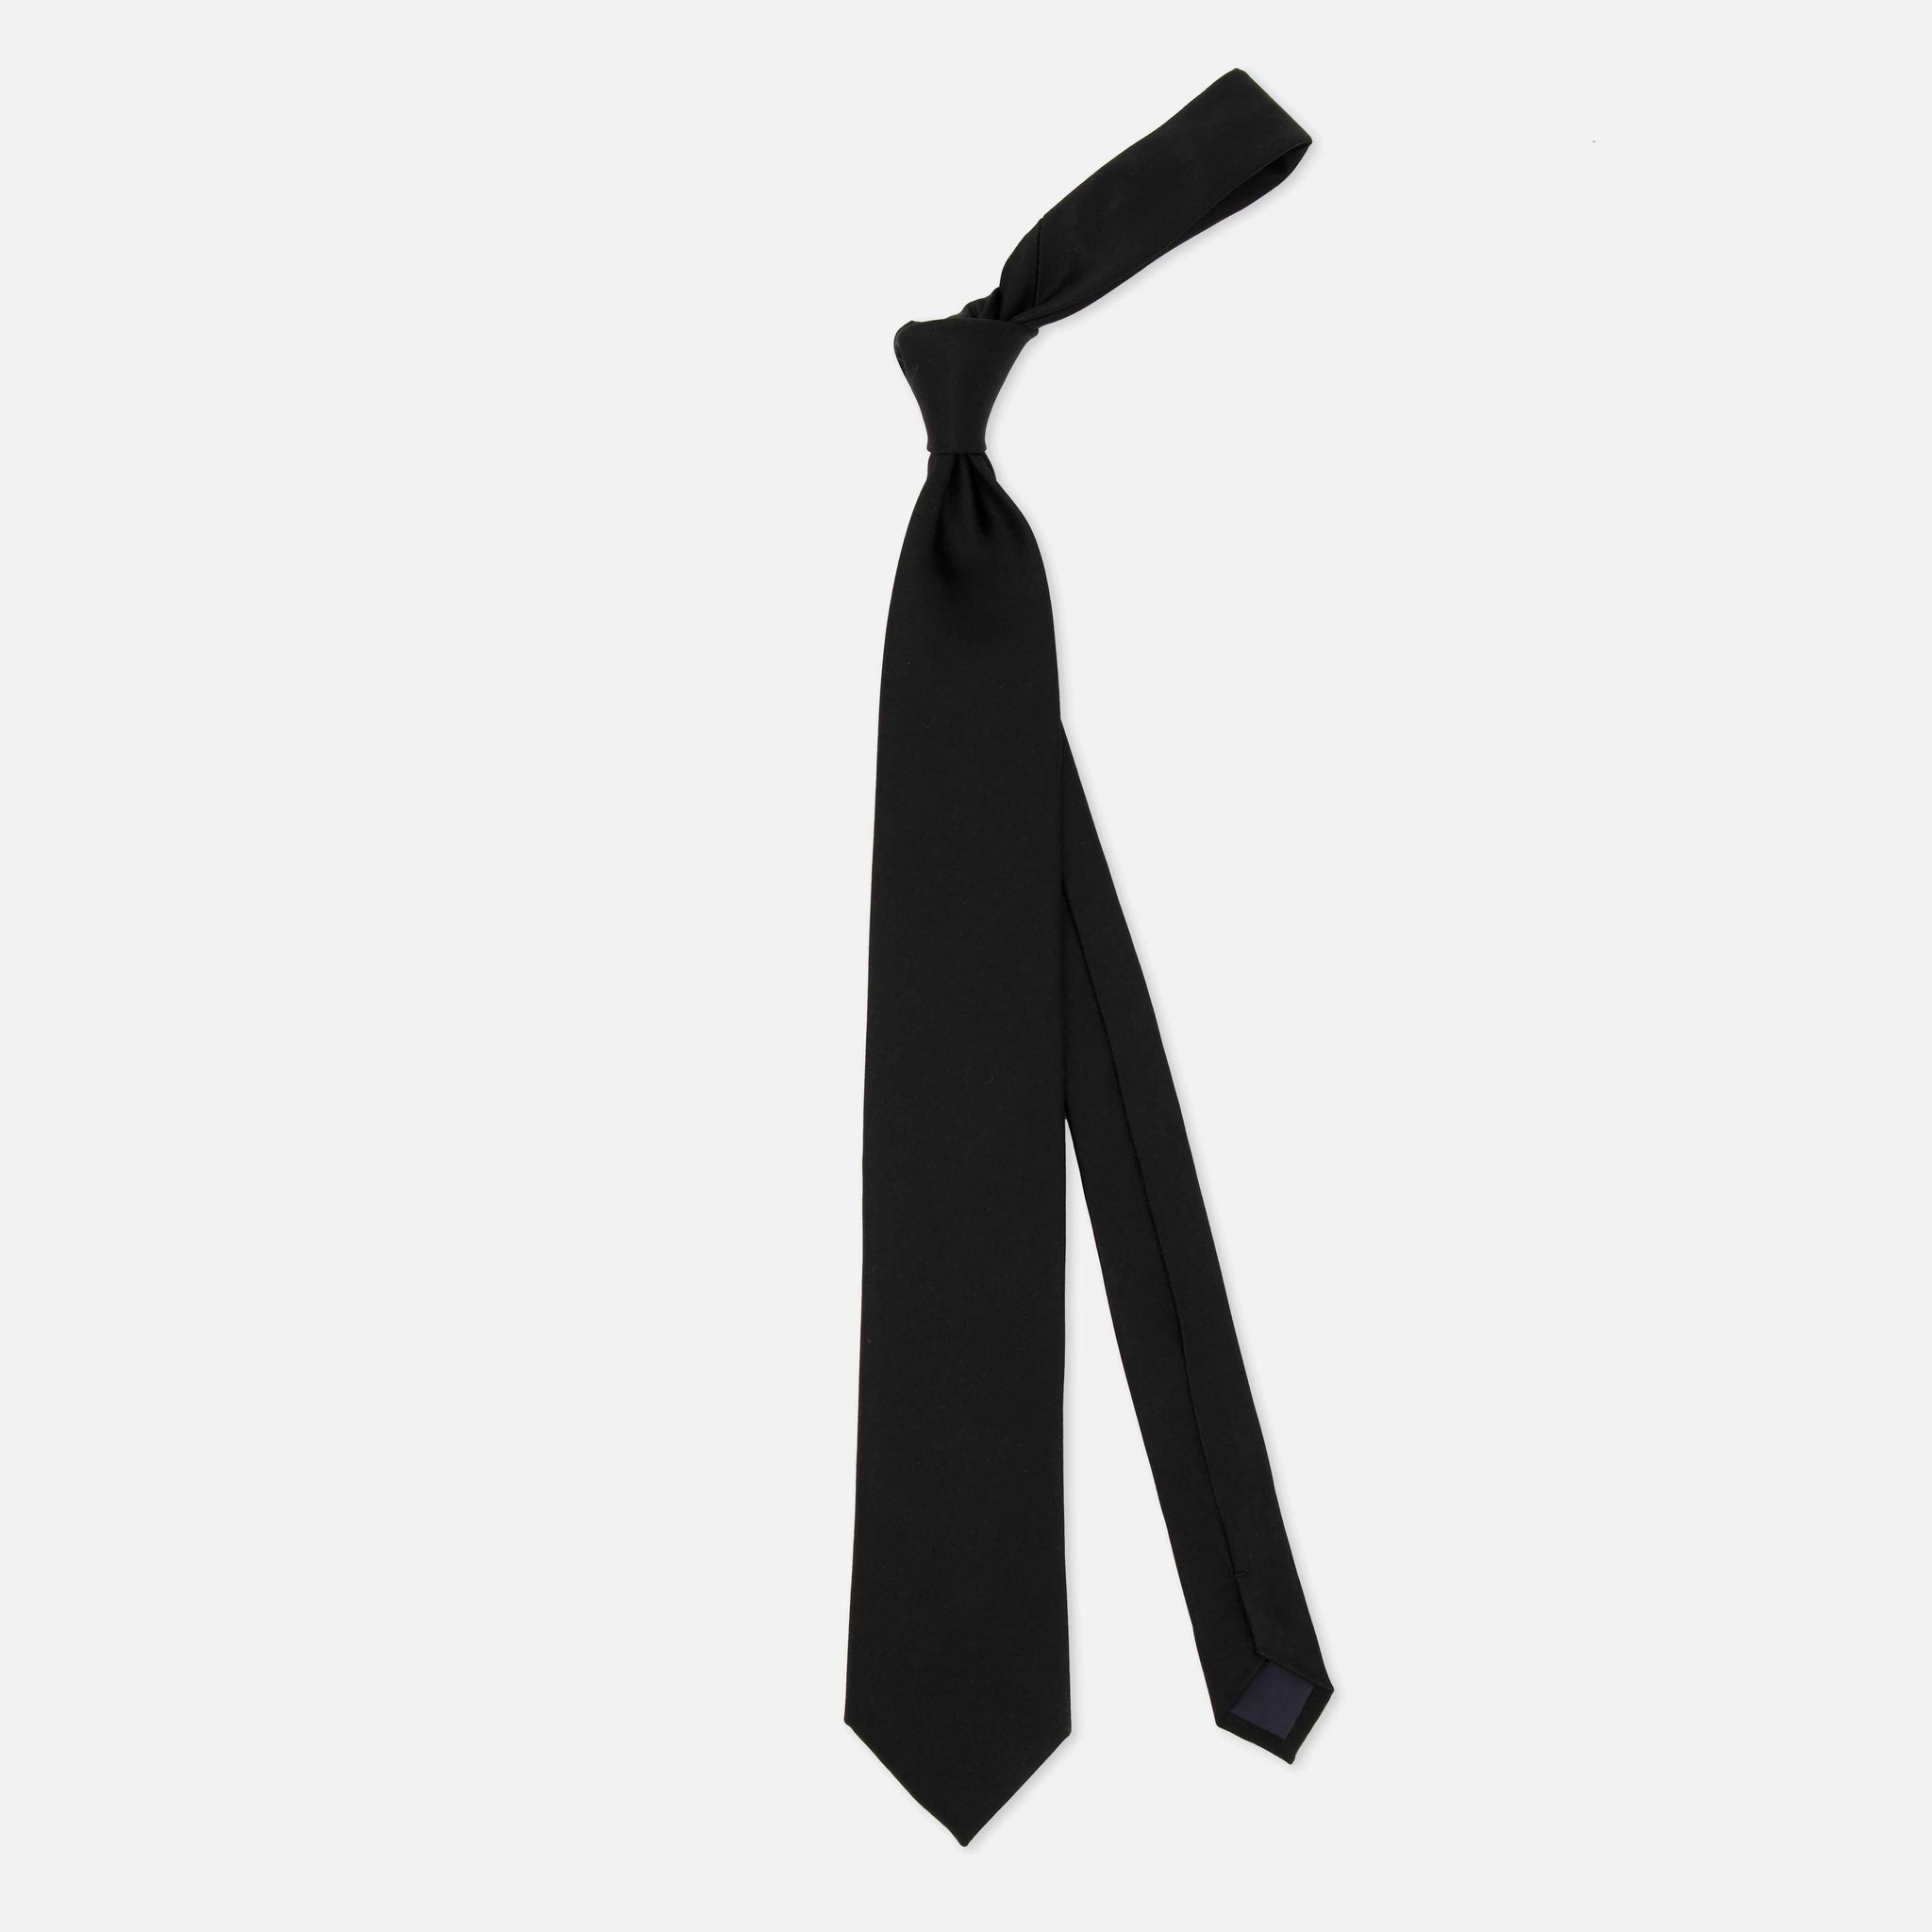 Solid Satin Black Tie by Tie Bar